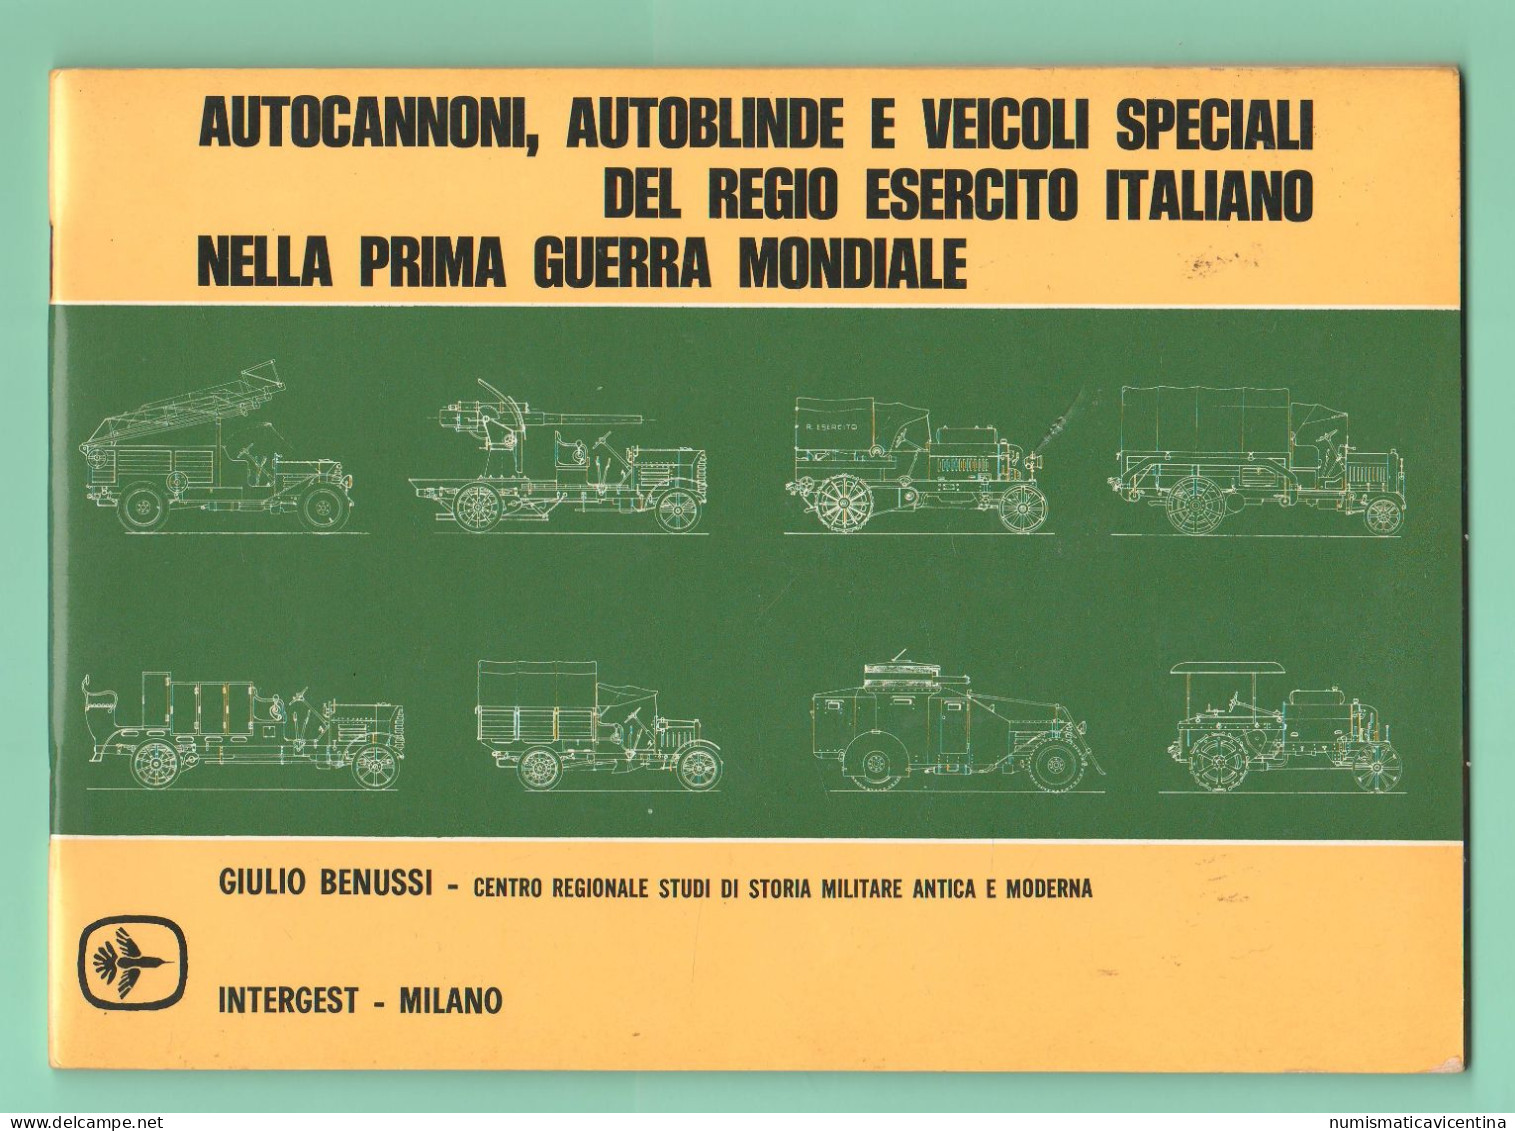 Regio Esercito Libro Autoblindo Autocannoni Veicoli Speciali Nella Prima Guerra Mondiale Military Vehicles 1st WW - Italien